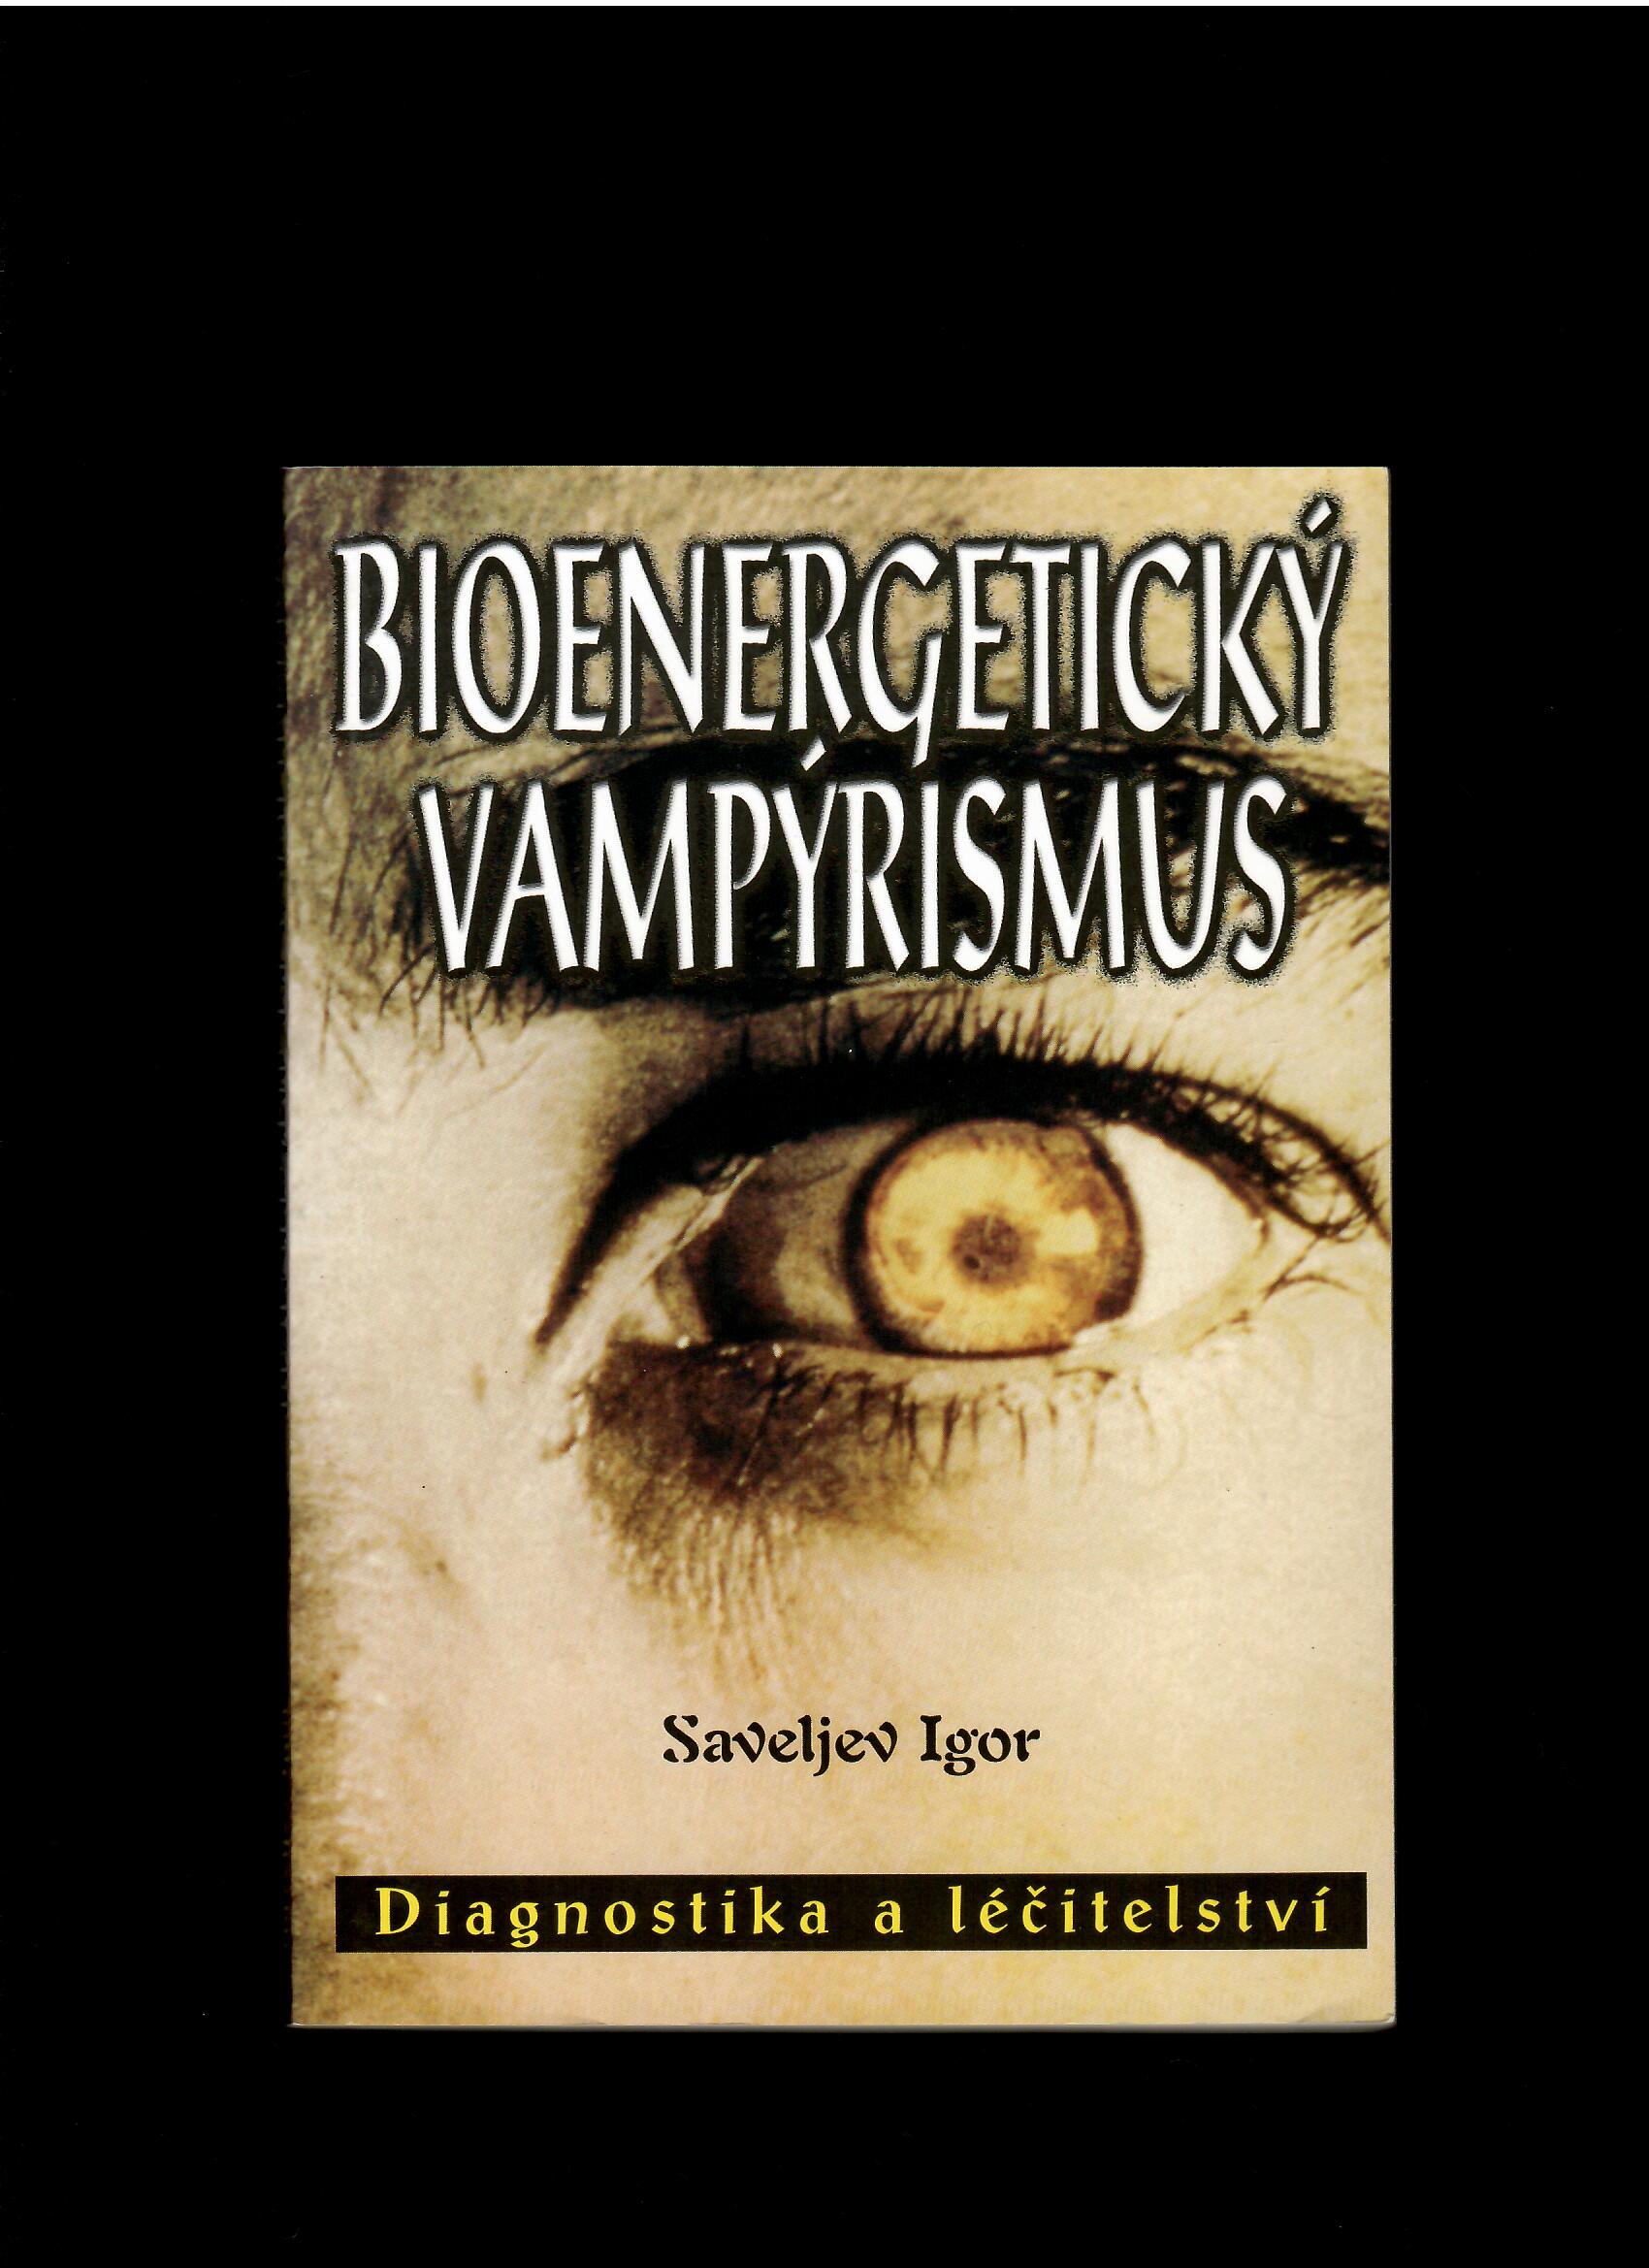 Saveljev Igor: Bioenergetický vampýrismus. Diagnostika a léčitelství